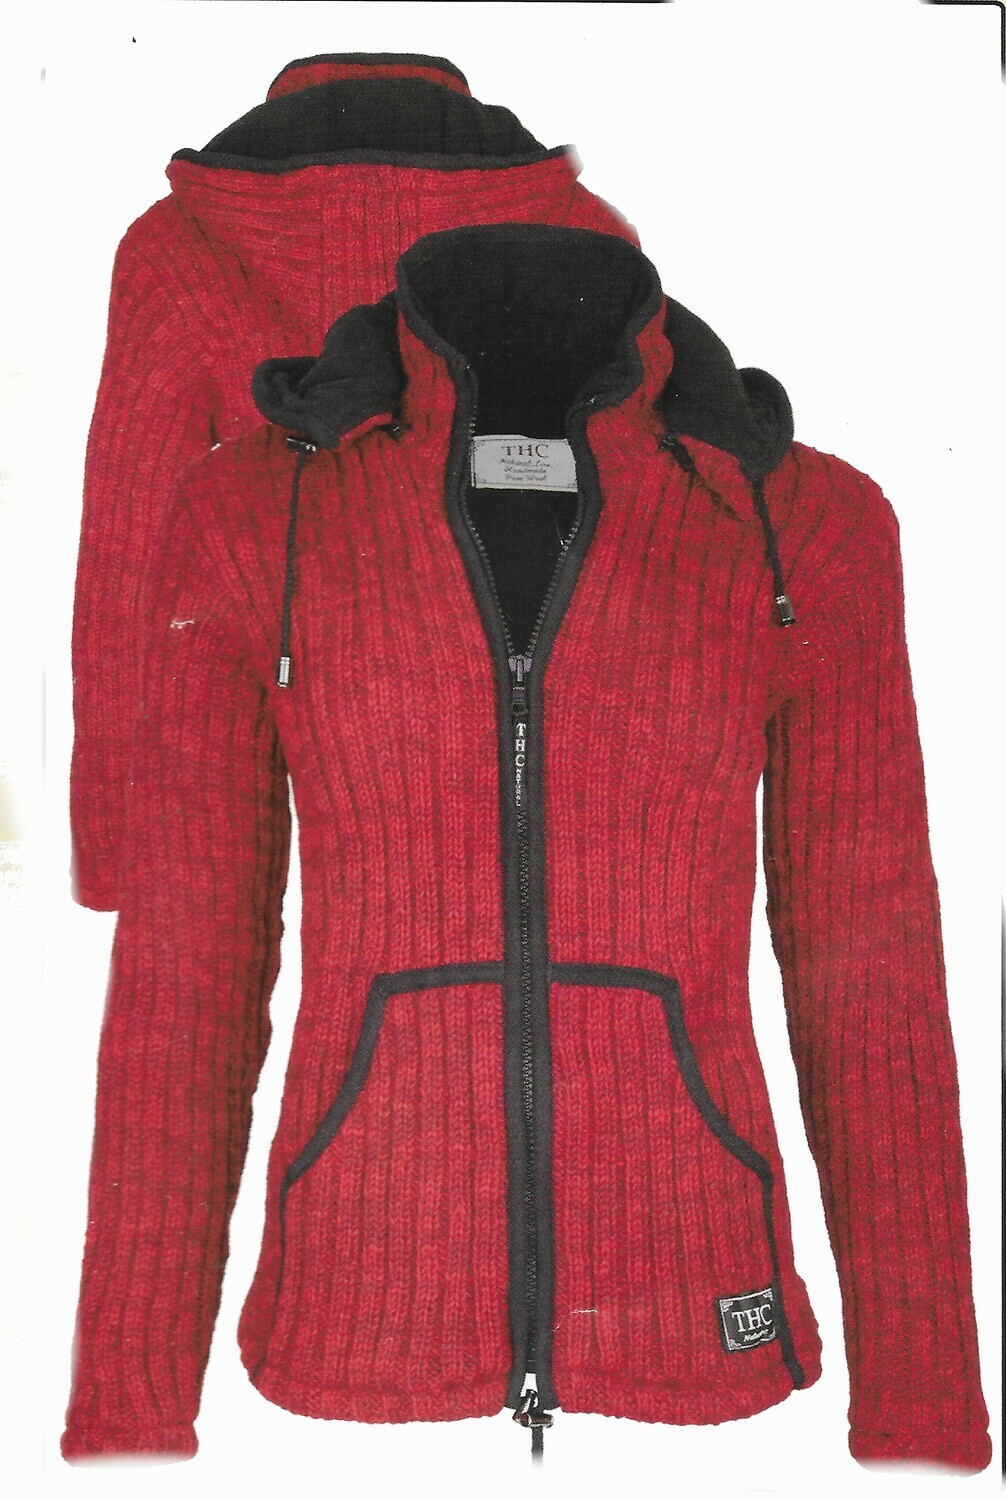 Schafwoll Jacke "Rot" mit abnehmbarer Kapuze